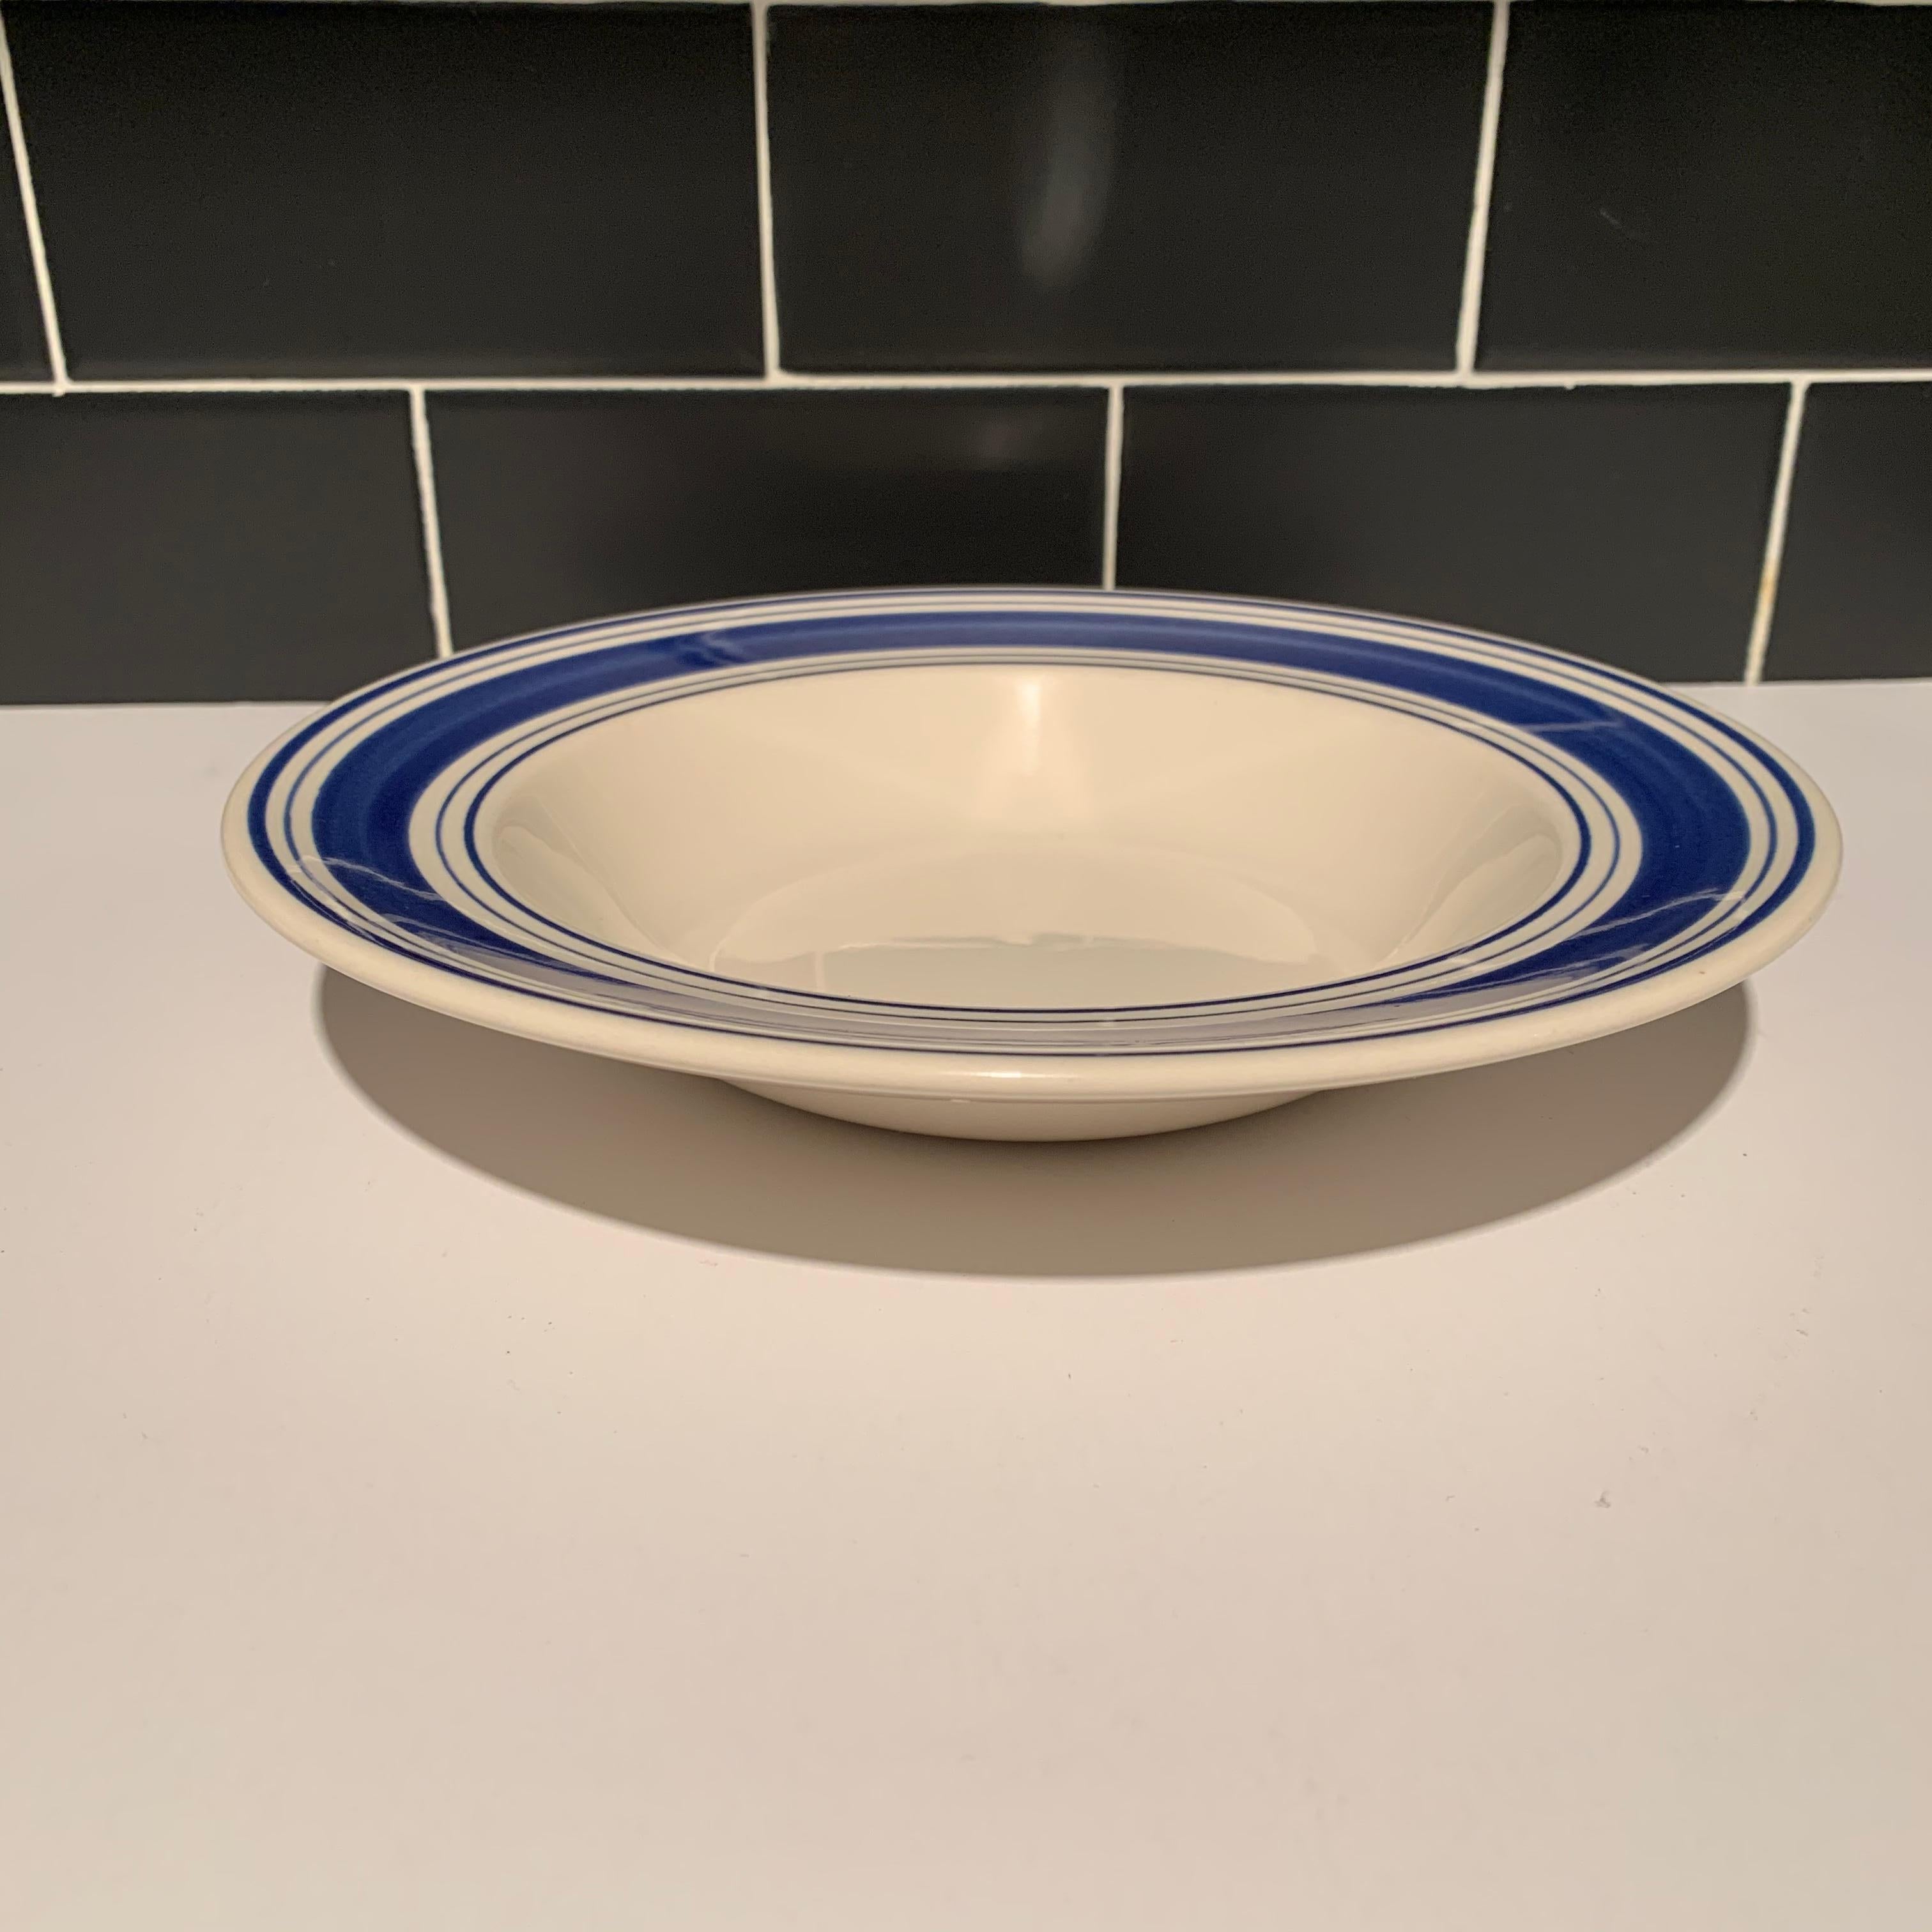 ralph lauren plates blue